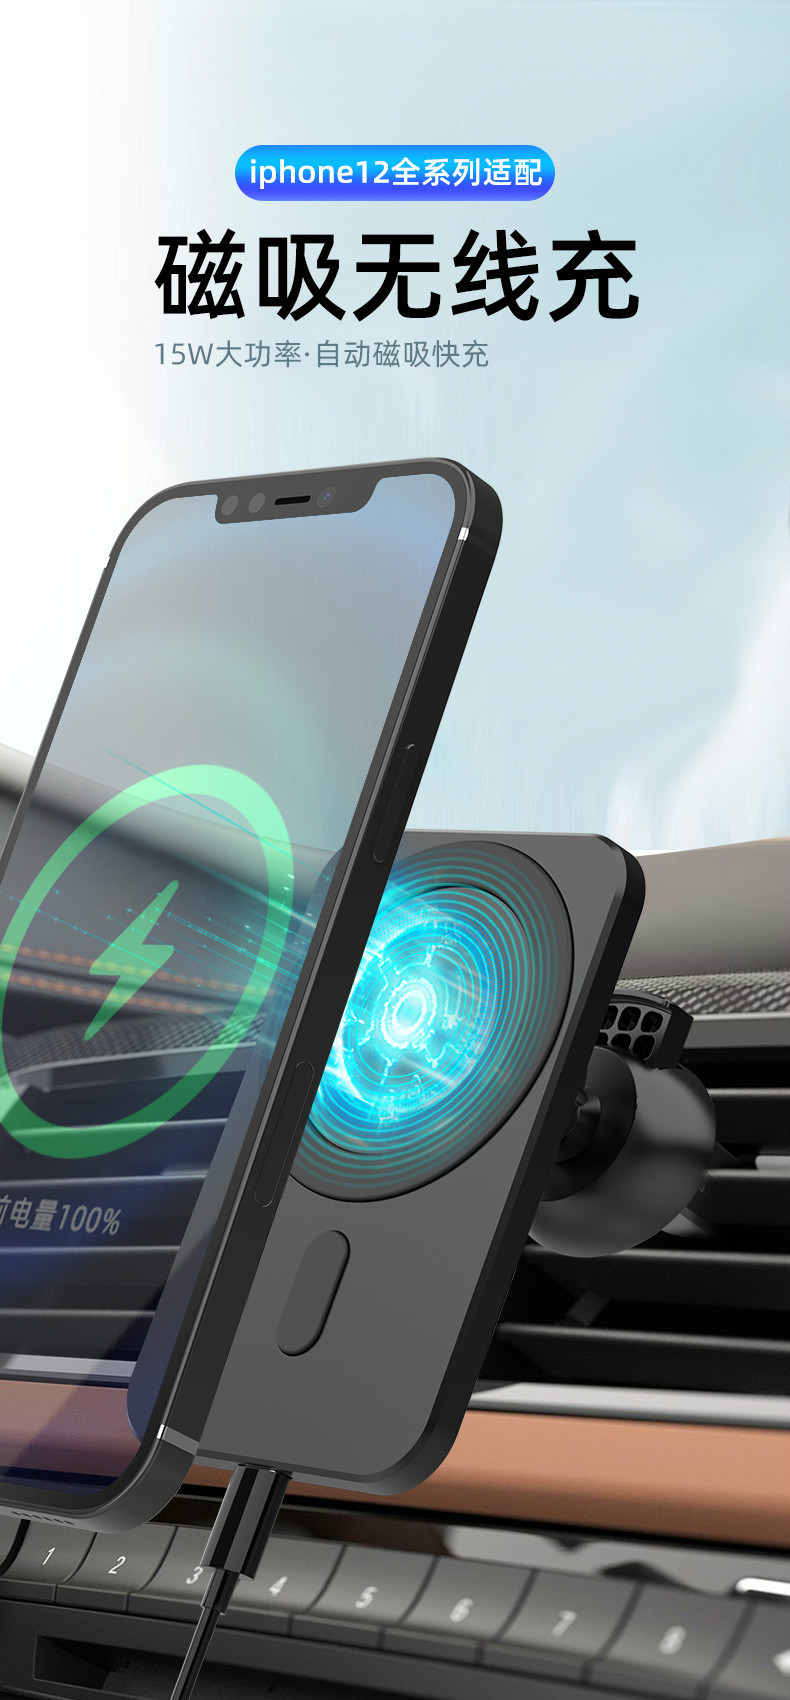 Iphone12系列車用磁吸無線充車架手機架無線充電盤伸縮冷氣出風口支架快速充電閃充車充吸盤支架 露天拍賣